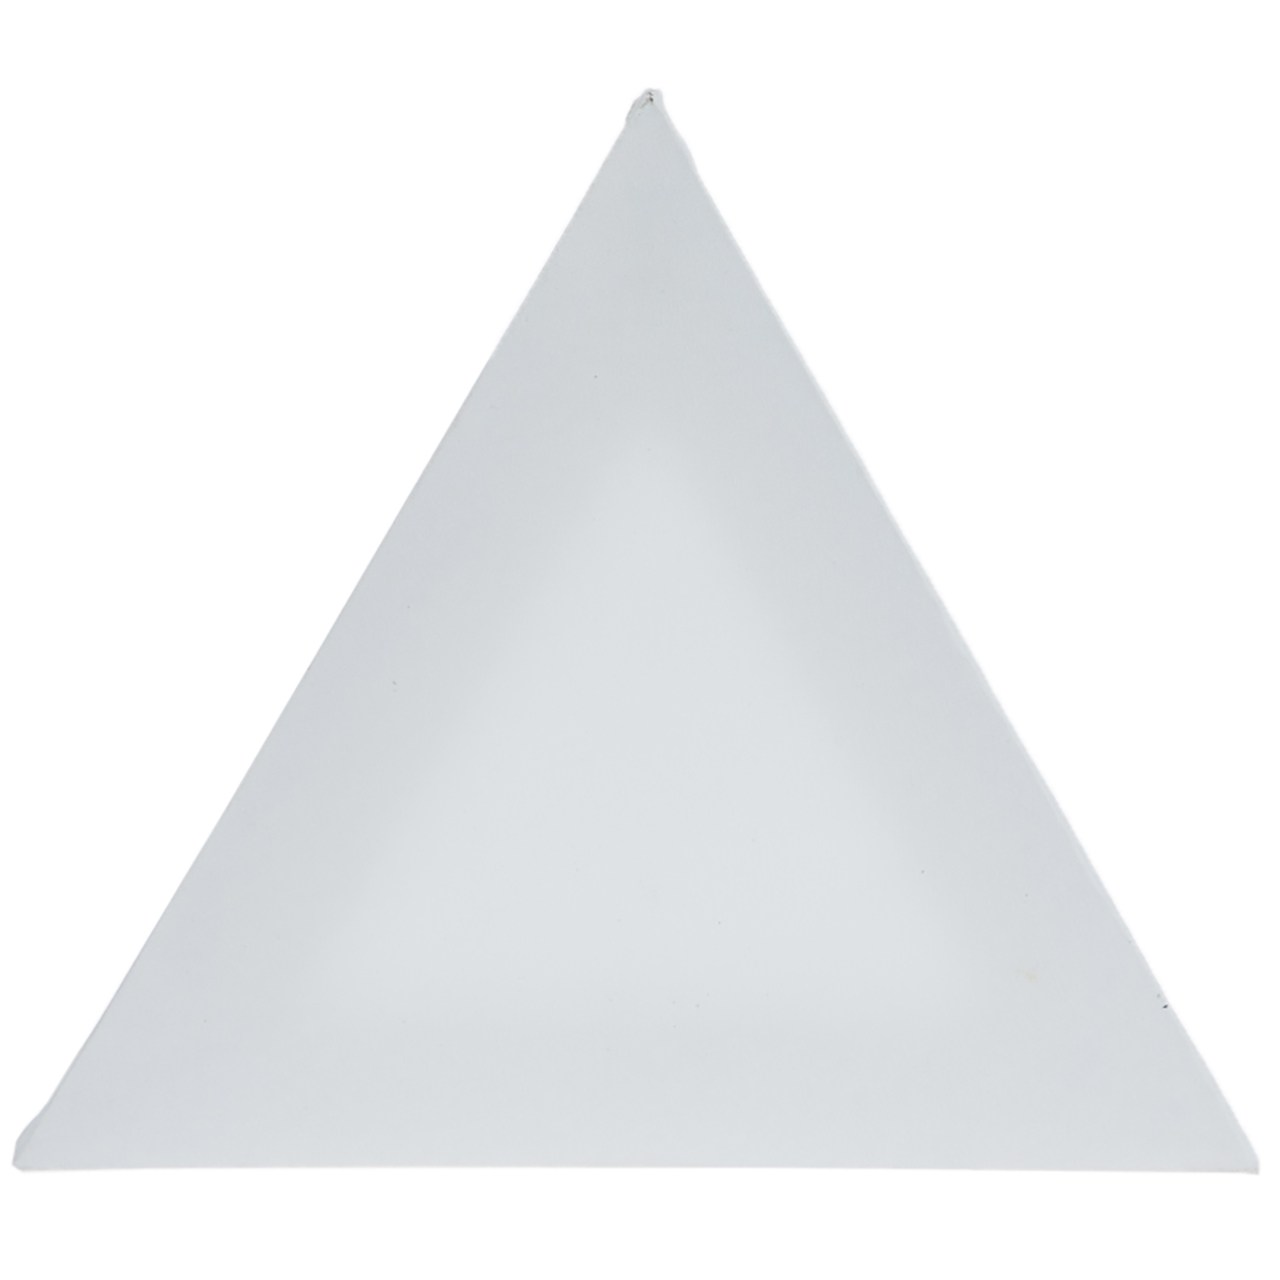 بوم مثلث نرمال بومیران ضلع ۳۰ سانتی متر